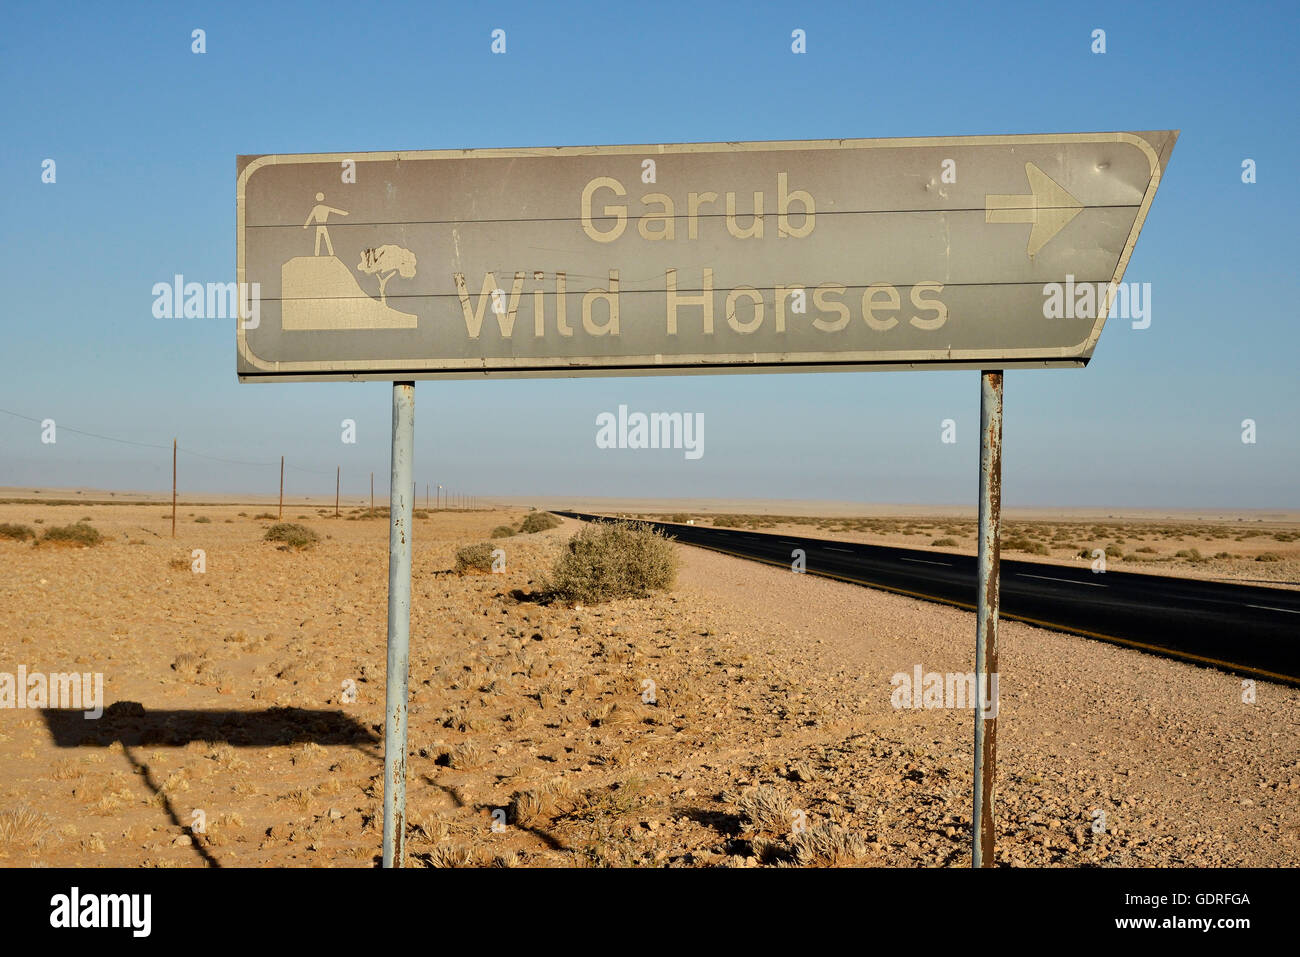 Zeichen Wüste Pferde von Garub, Garub Wildpferde, in der Nähe Aus, Karas Region, Namibia Stockfoto